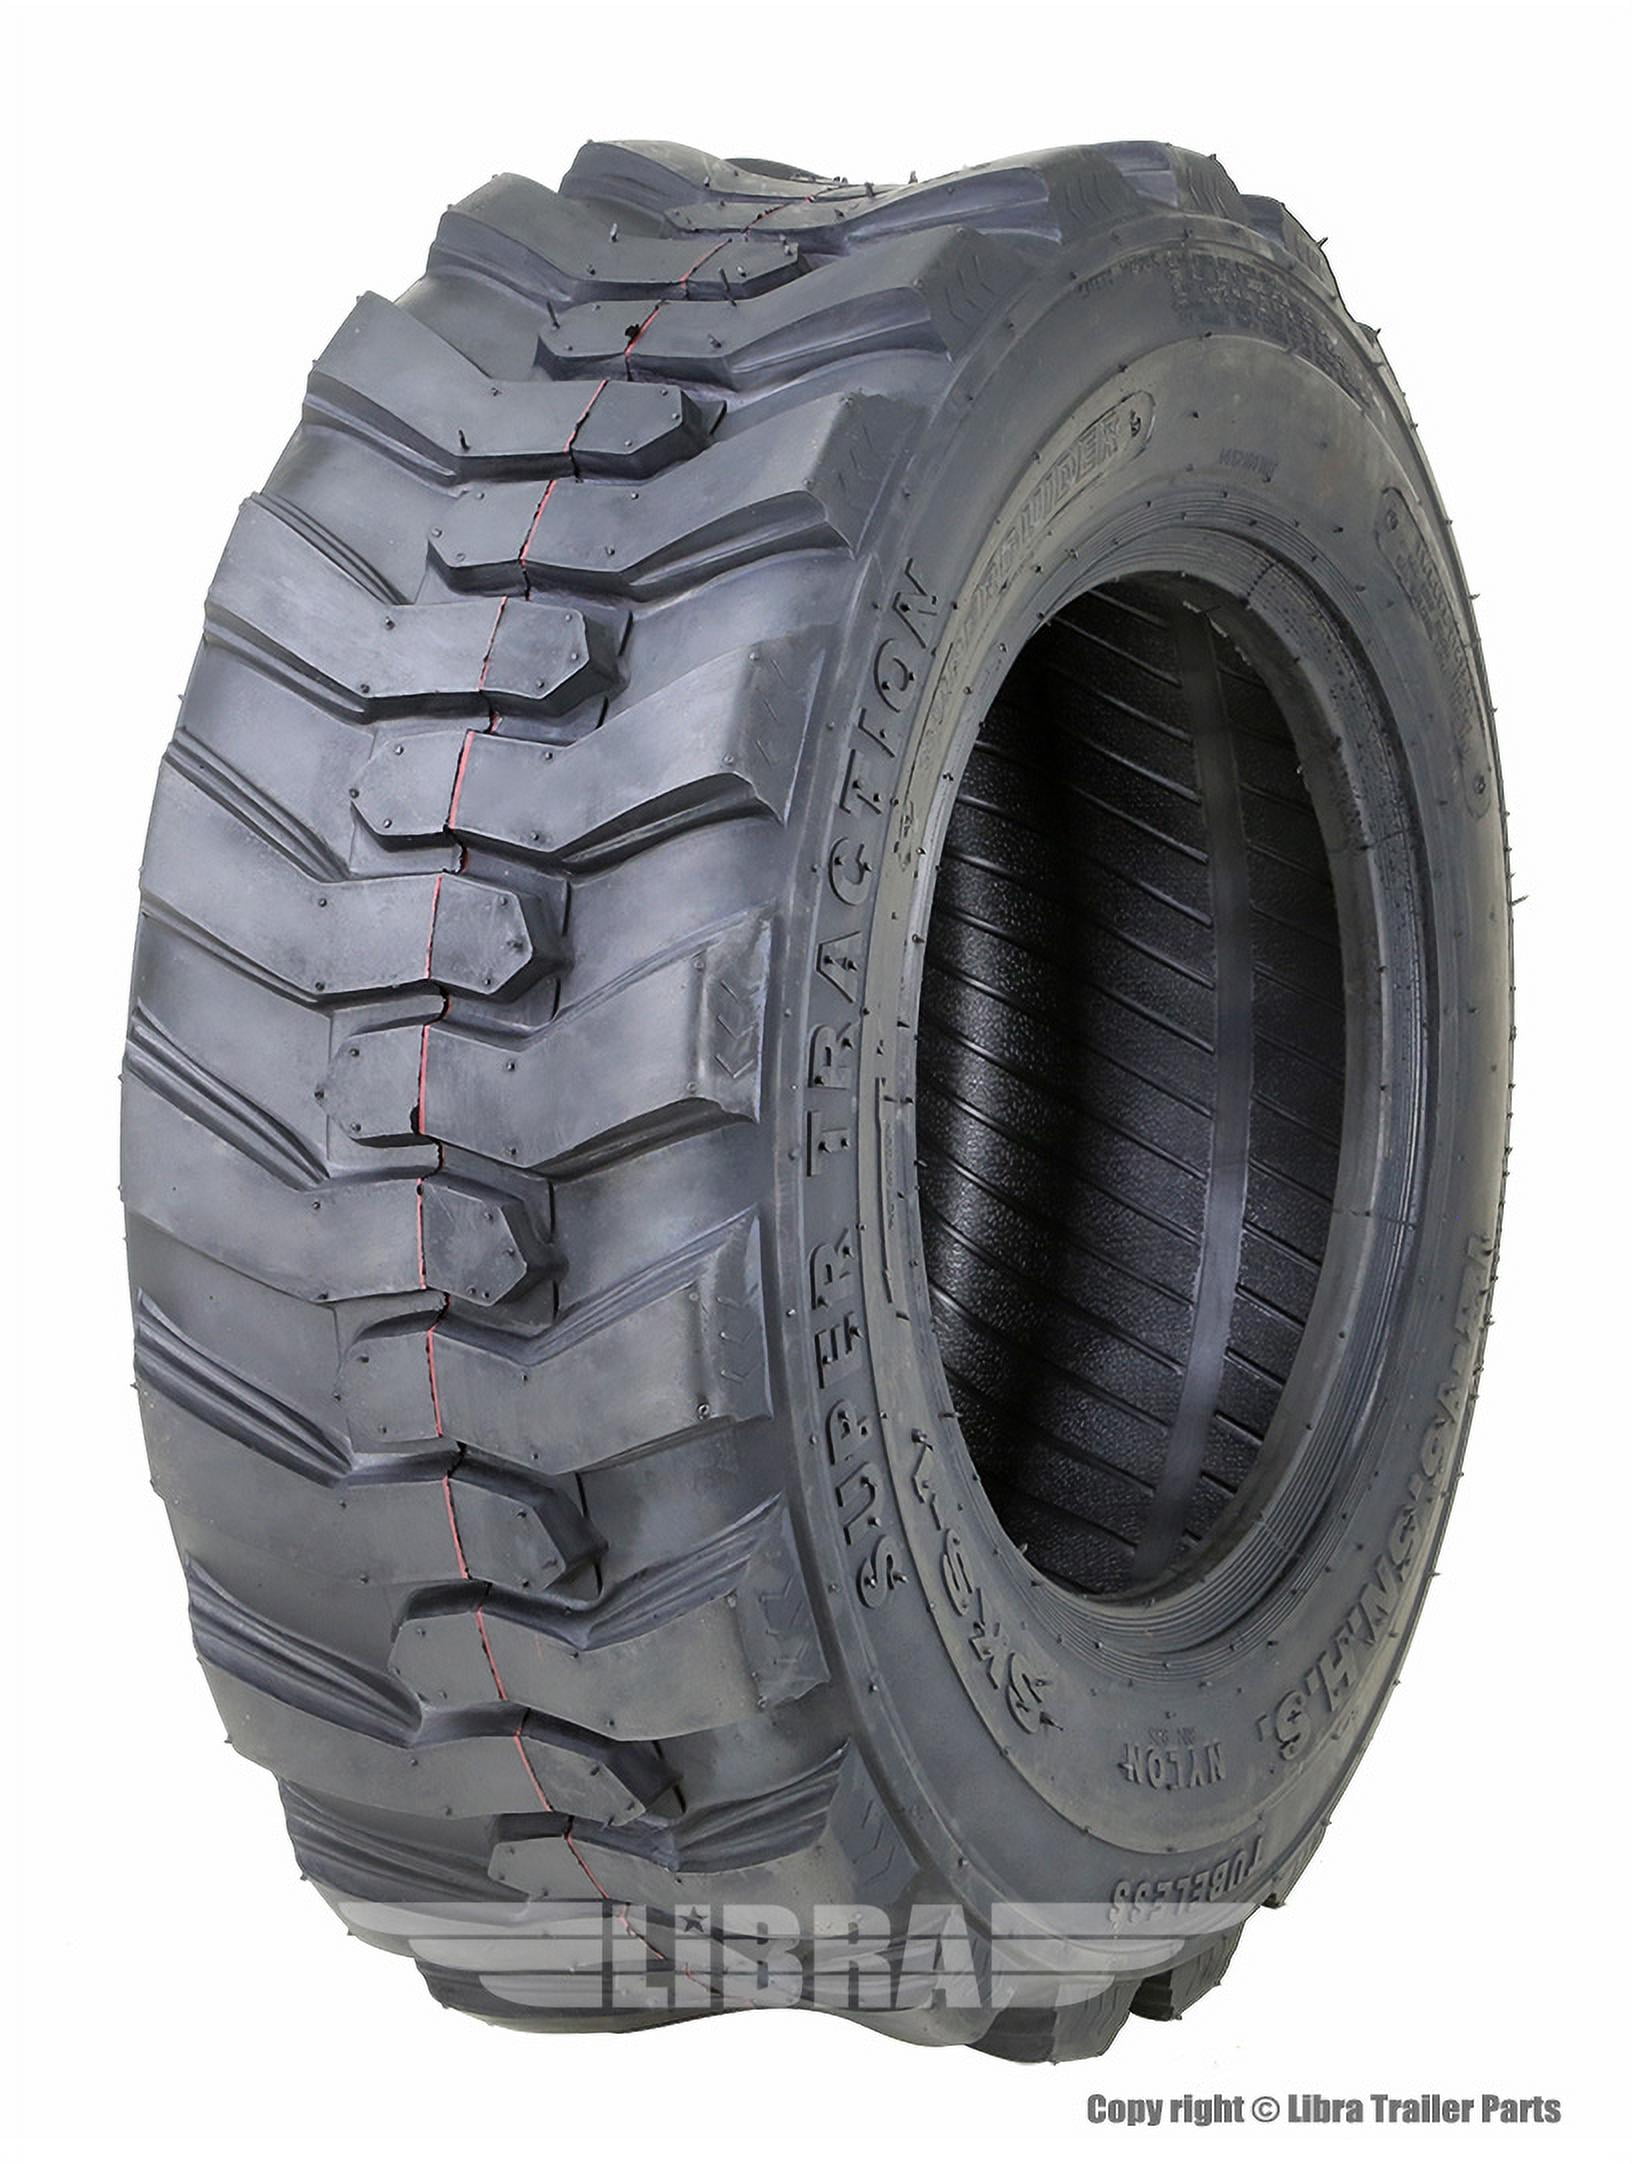 ZEEMAX One New Heavy Duty 12.5/80-18 /12PR Skid Steer Backhoe Loader Tire 12004 